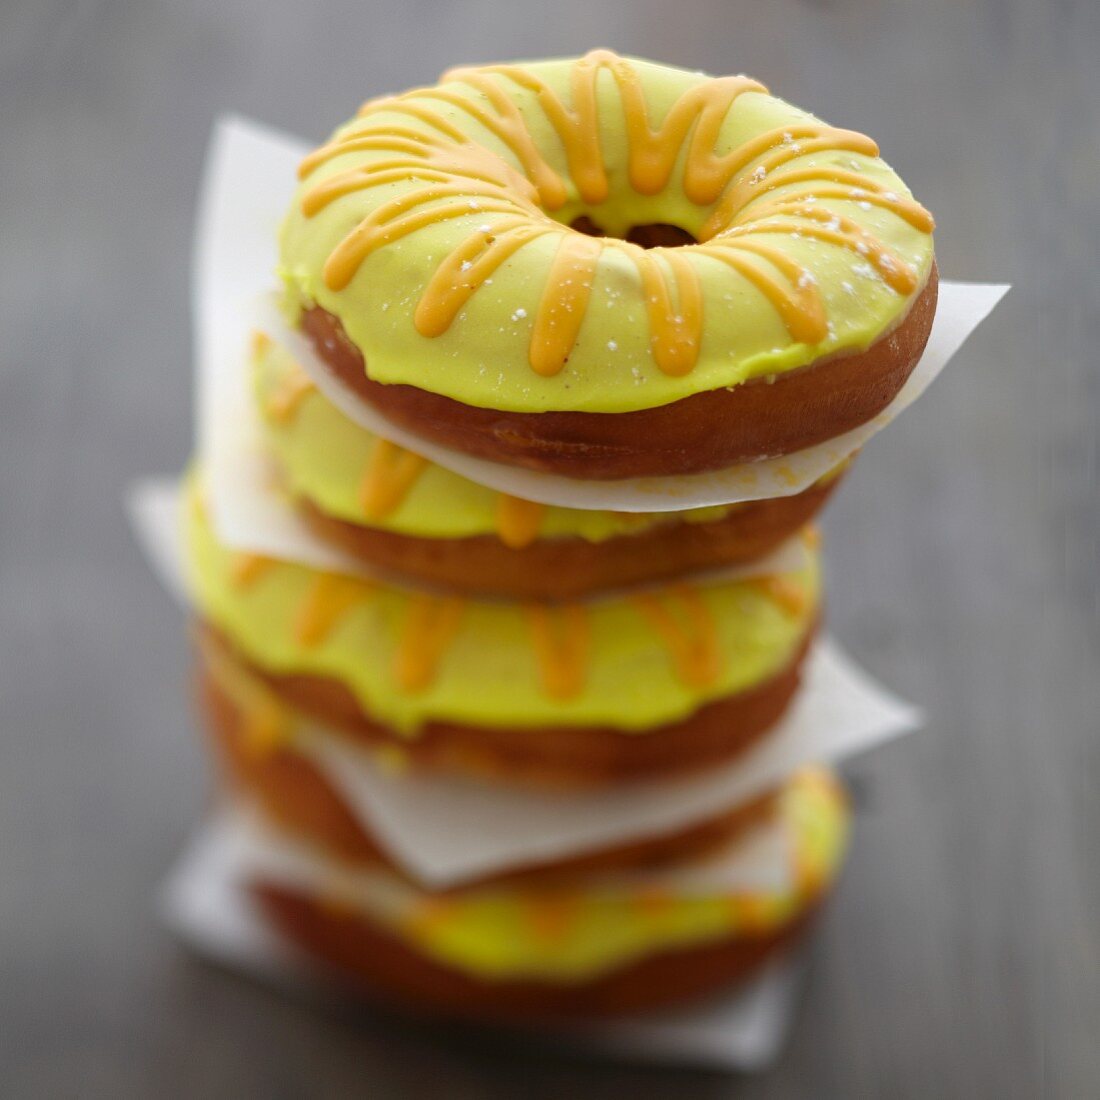 Confit citrus donuts